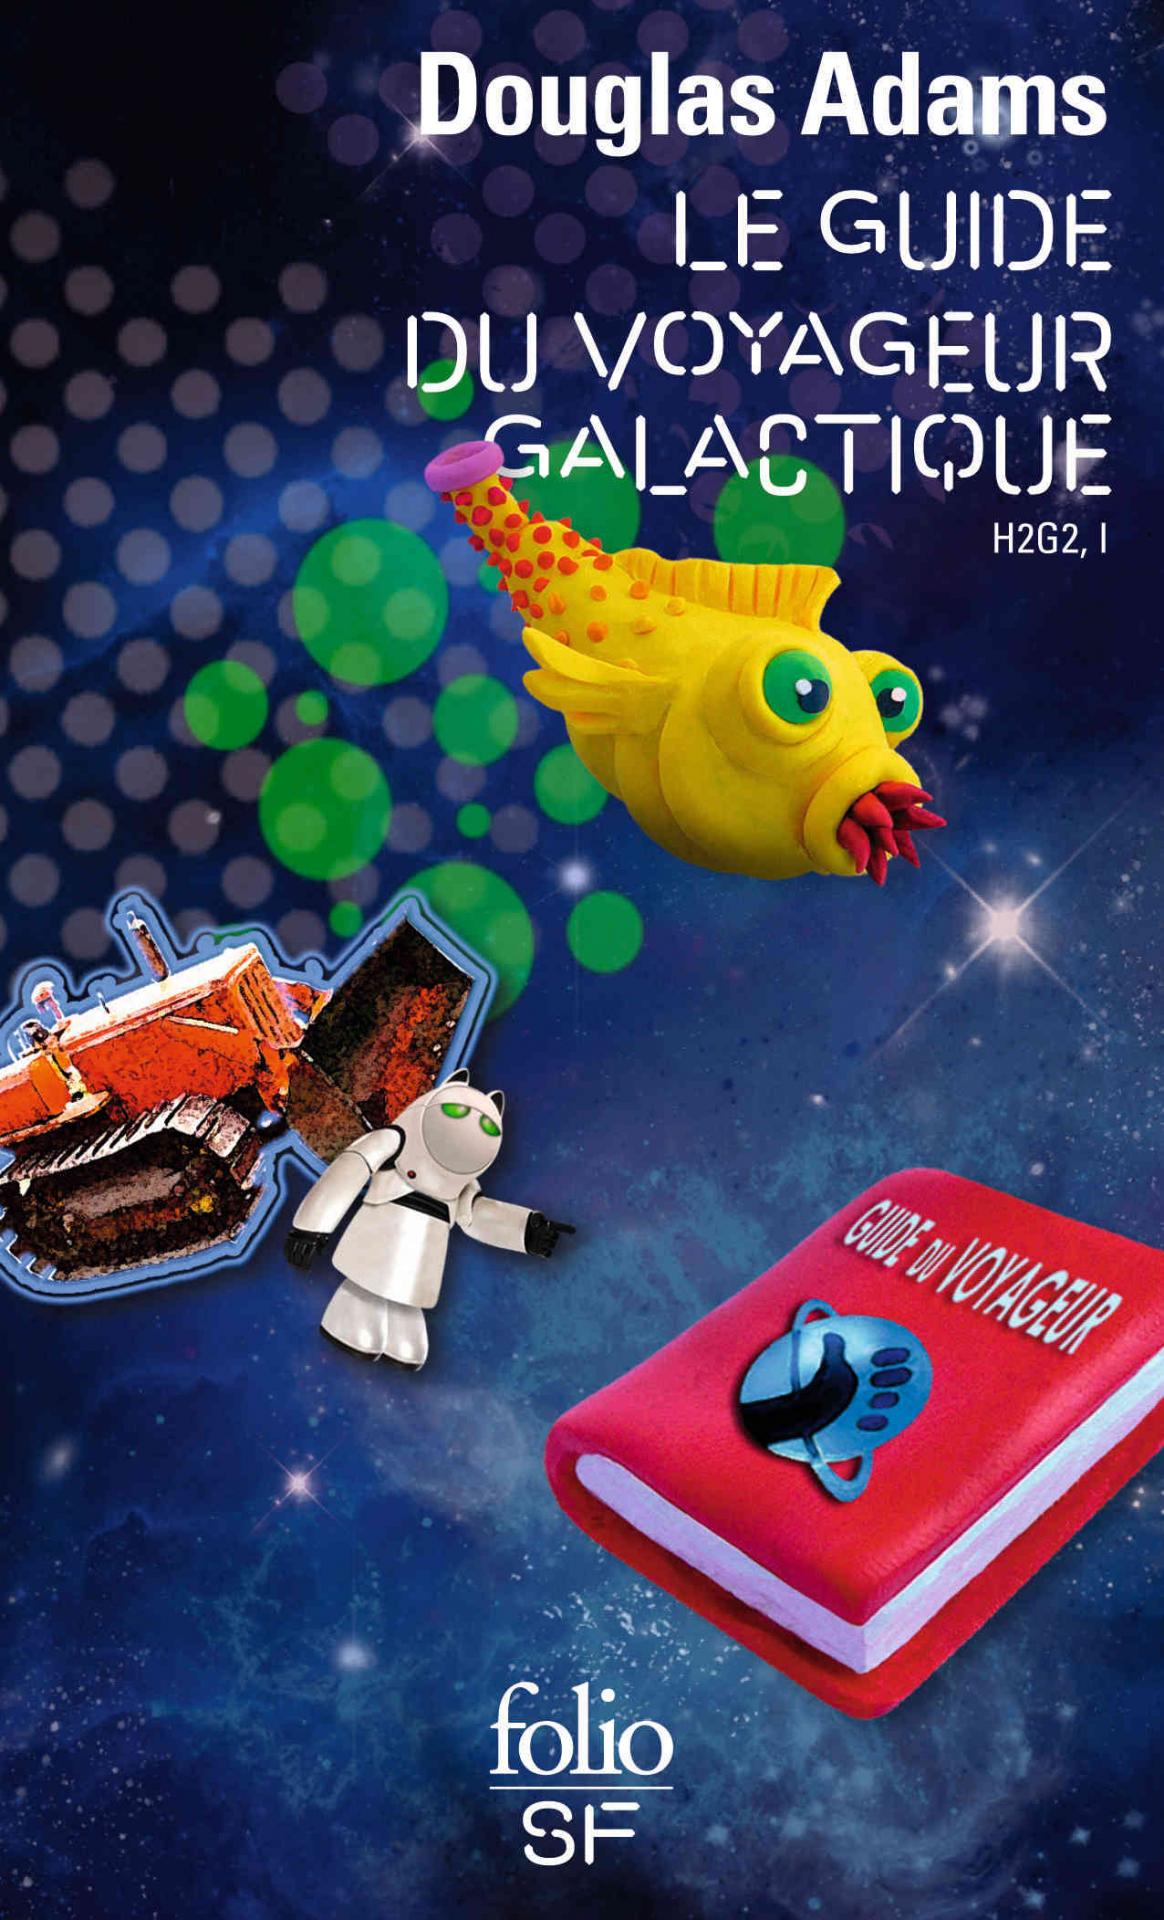 H2G2 – Le Guide du voyageur galactique